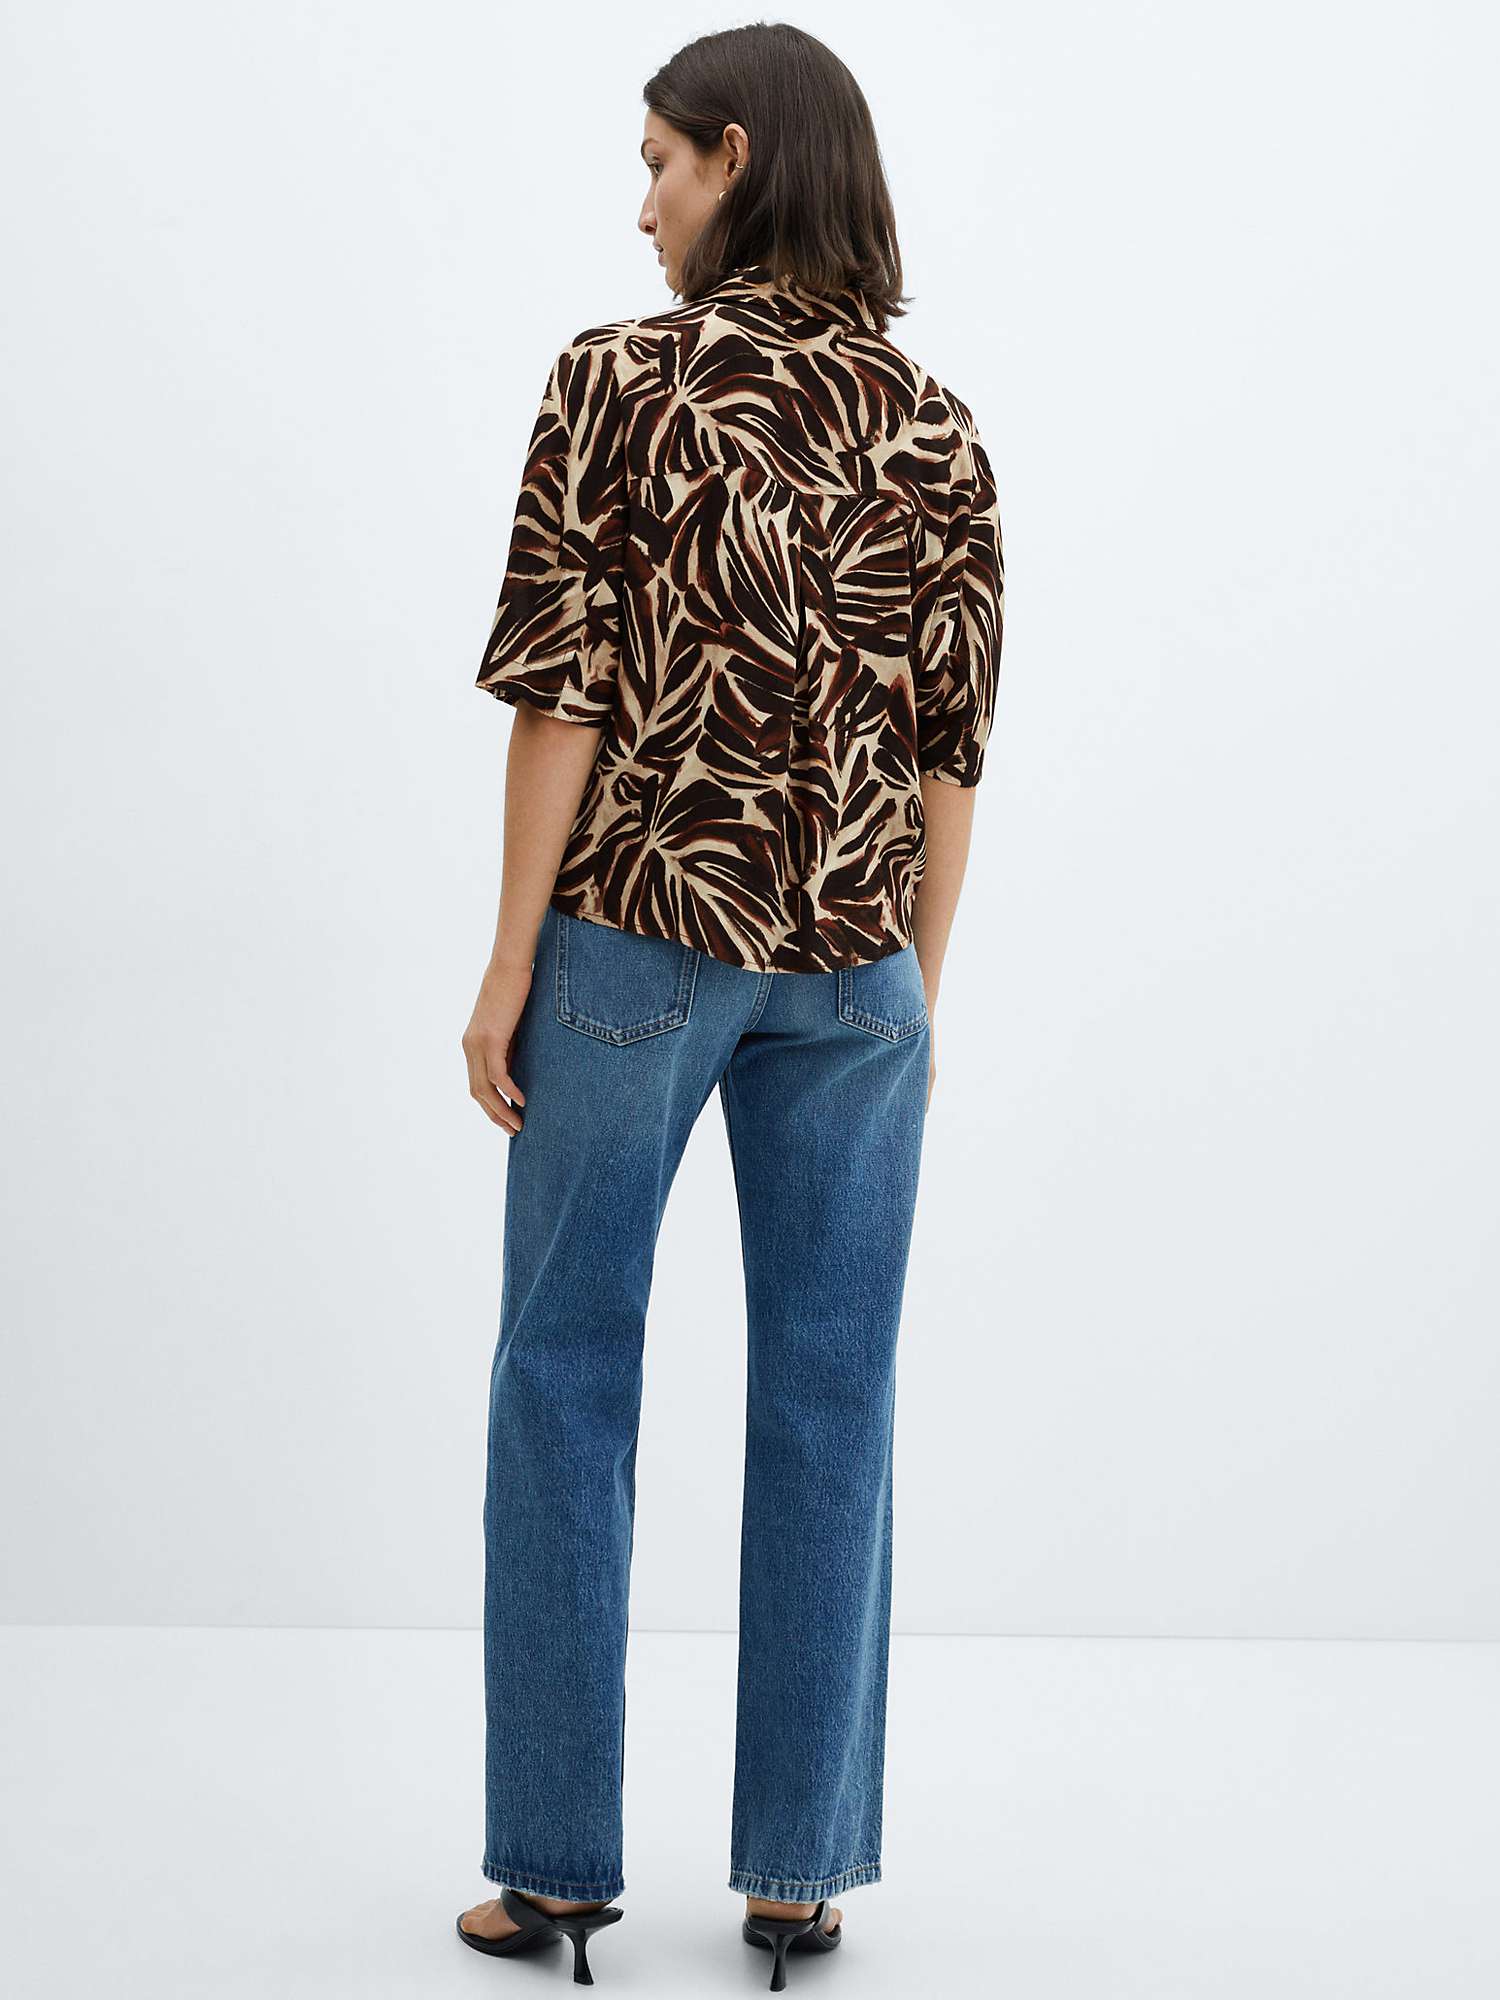 Buy Mango Claudie Short Sleeve Shirt, Light Beige/Brown Online at johnlewis.com